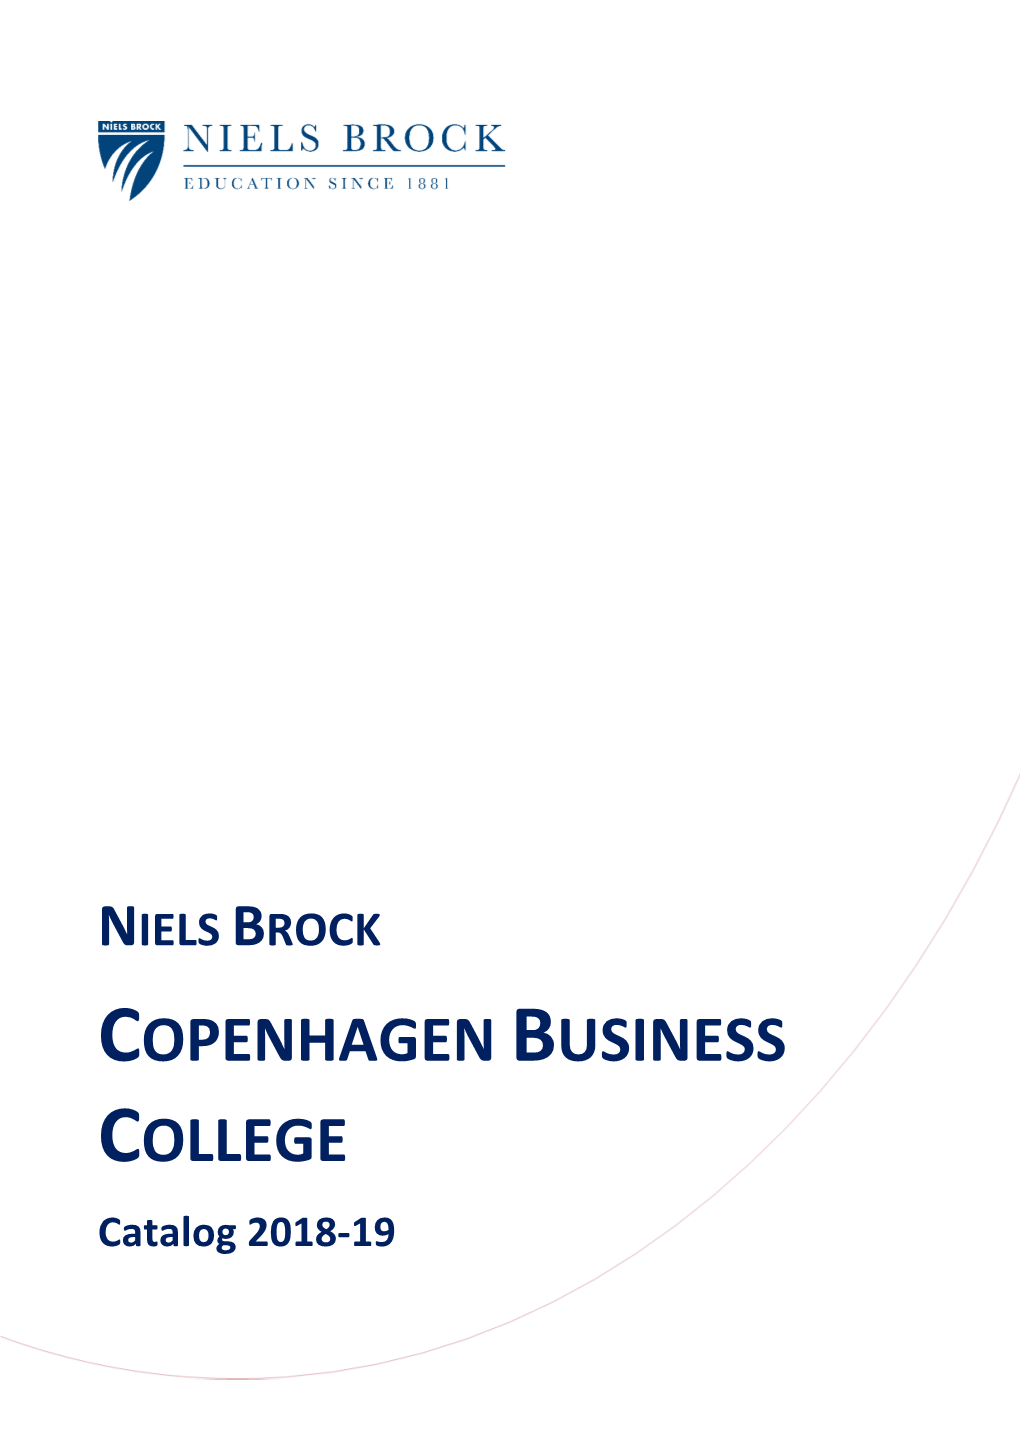 A. Niels Brock Copenhagen Business College